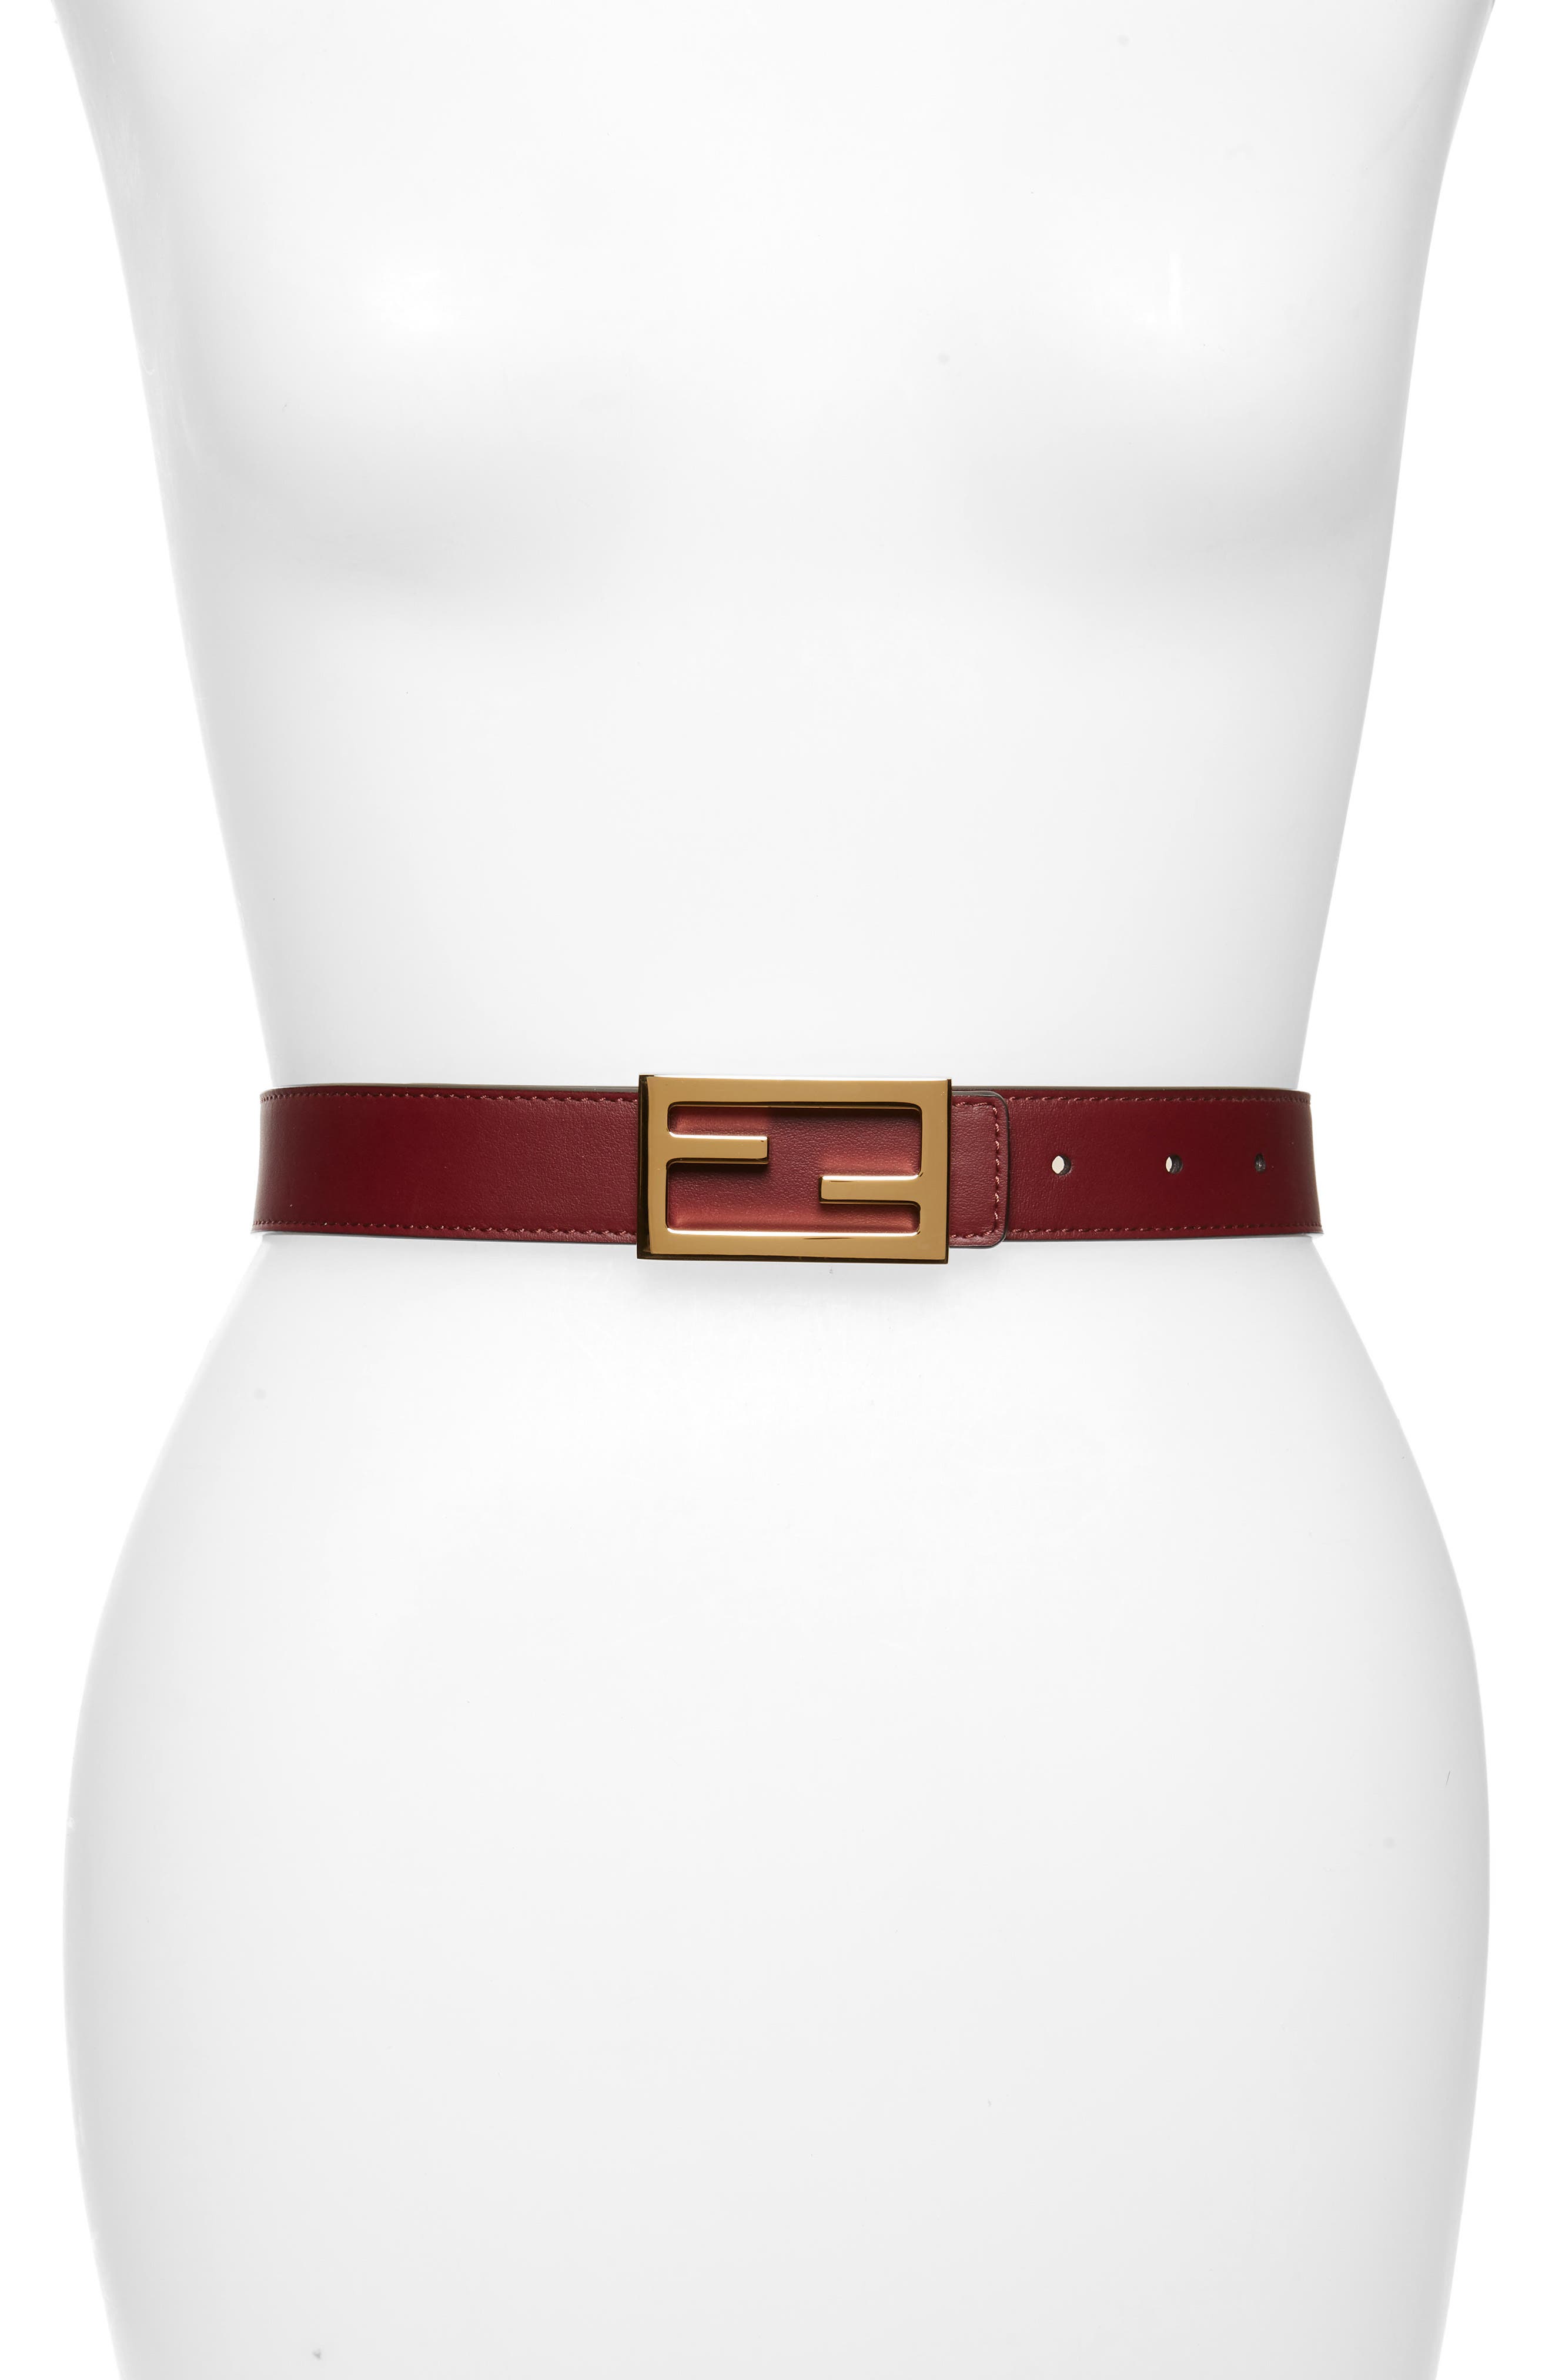 new fendi belt